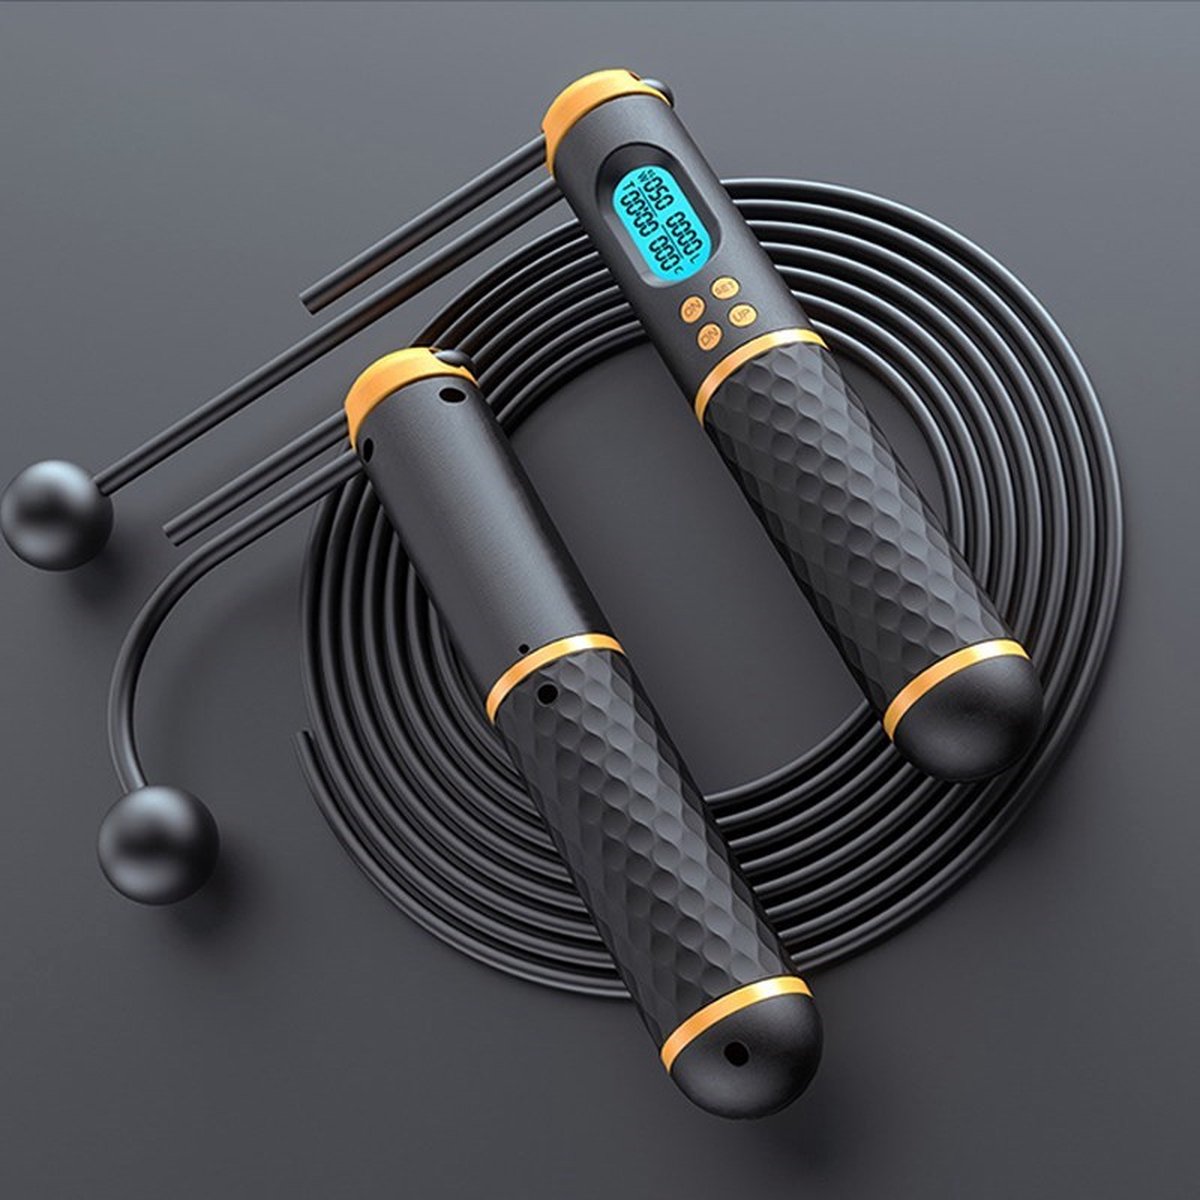 Digitaal Springtouw 2-in-1 - Met Draad & Draadloos - Smart Jump Rope - Fitness voor Buiten en Binnen - Ergonomisch Antislip Handvat - Digitale Teller - Zwart